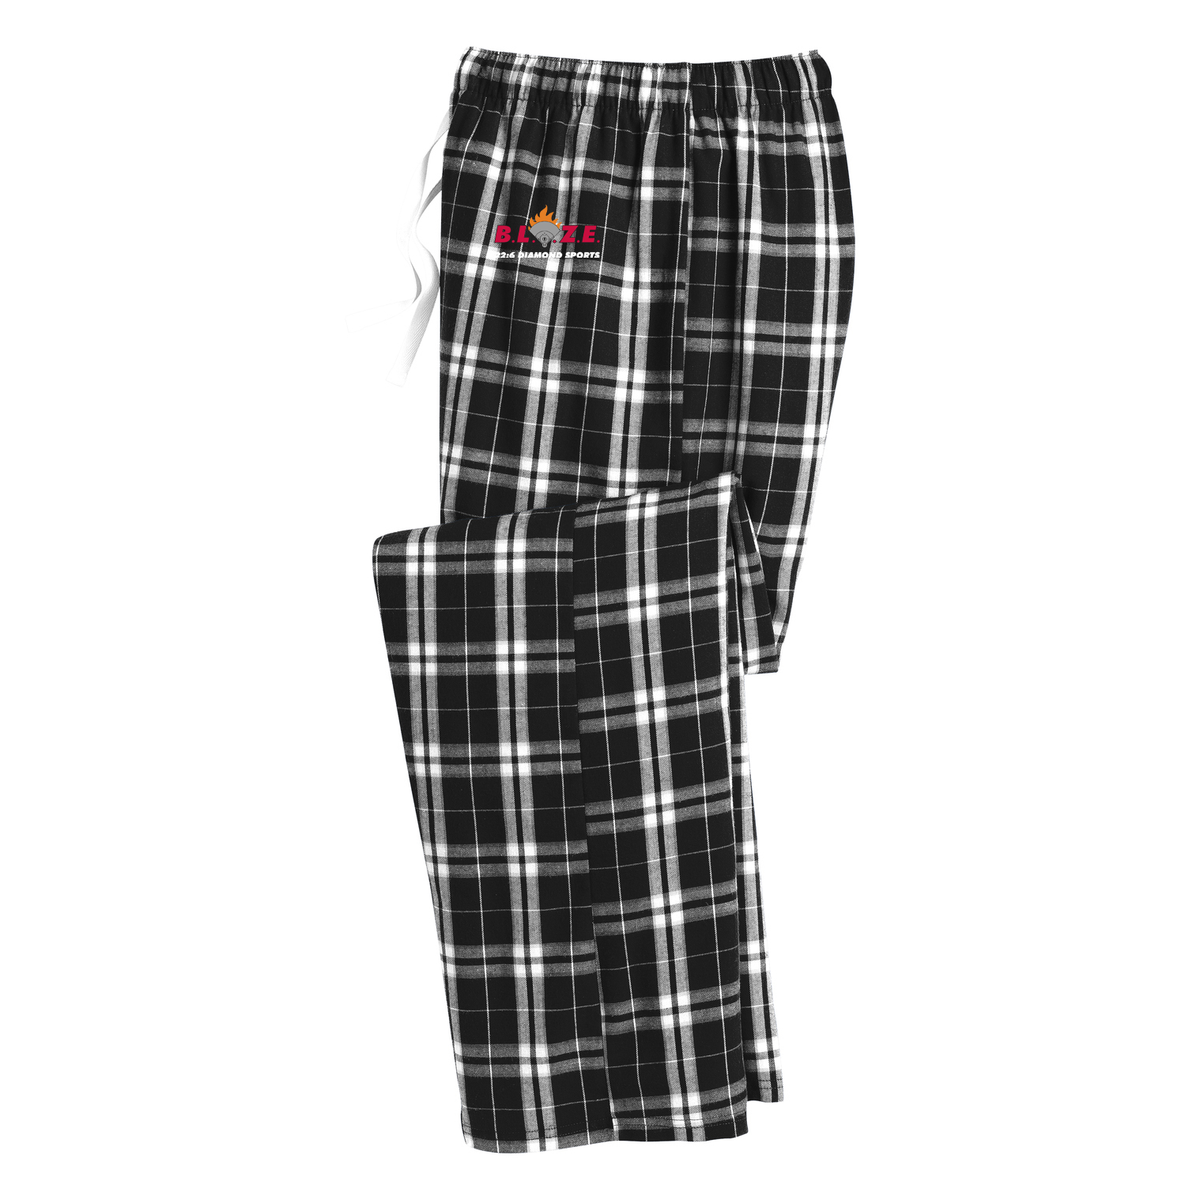 BLAZE 22:6 Diamond Sports Plaid Pajama Pants